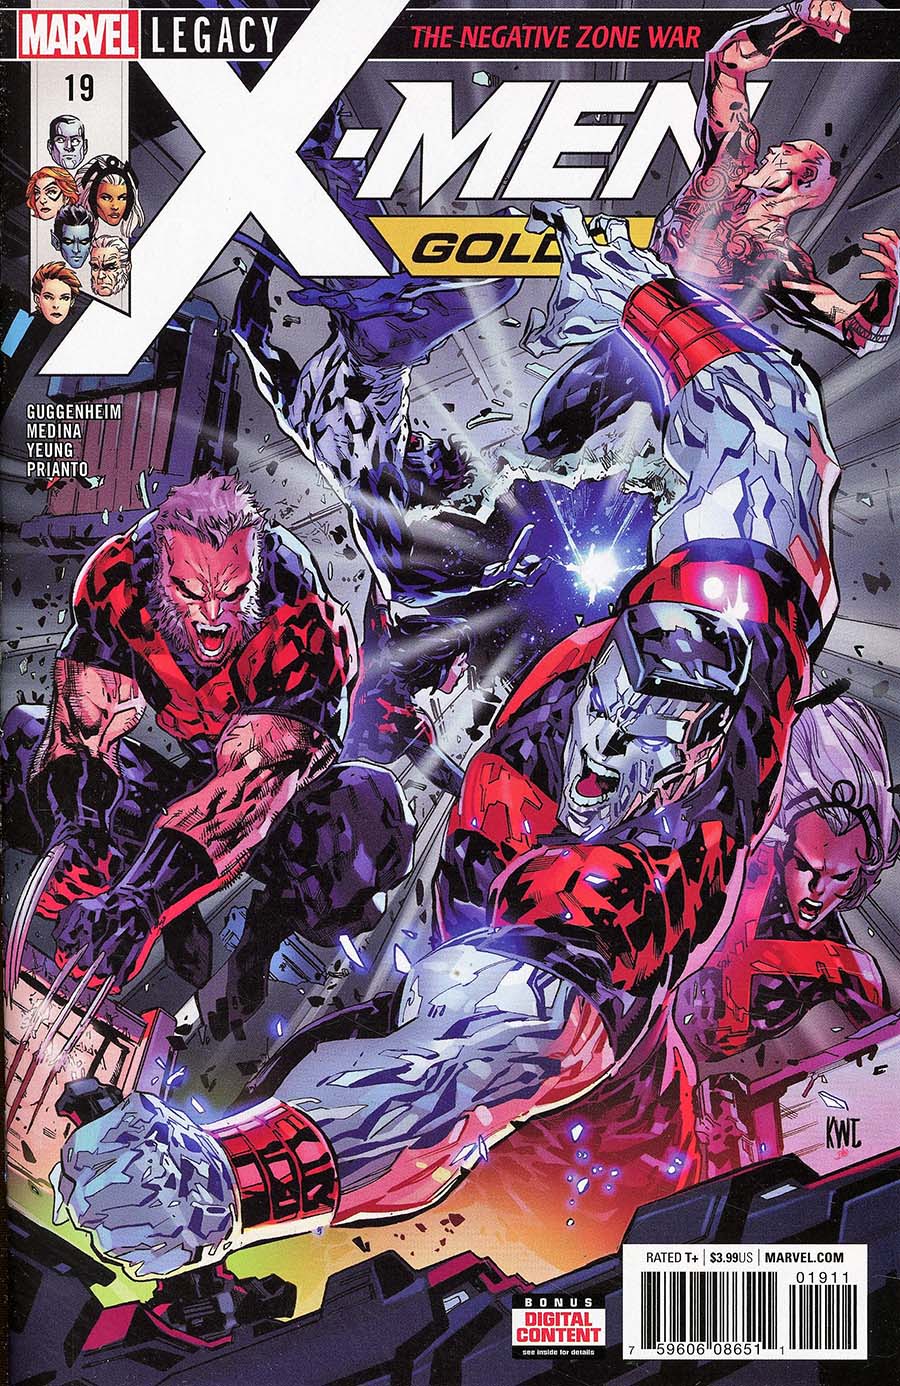 X-Men Gold #19 (Marvel Legacy Tie-In)